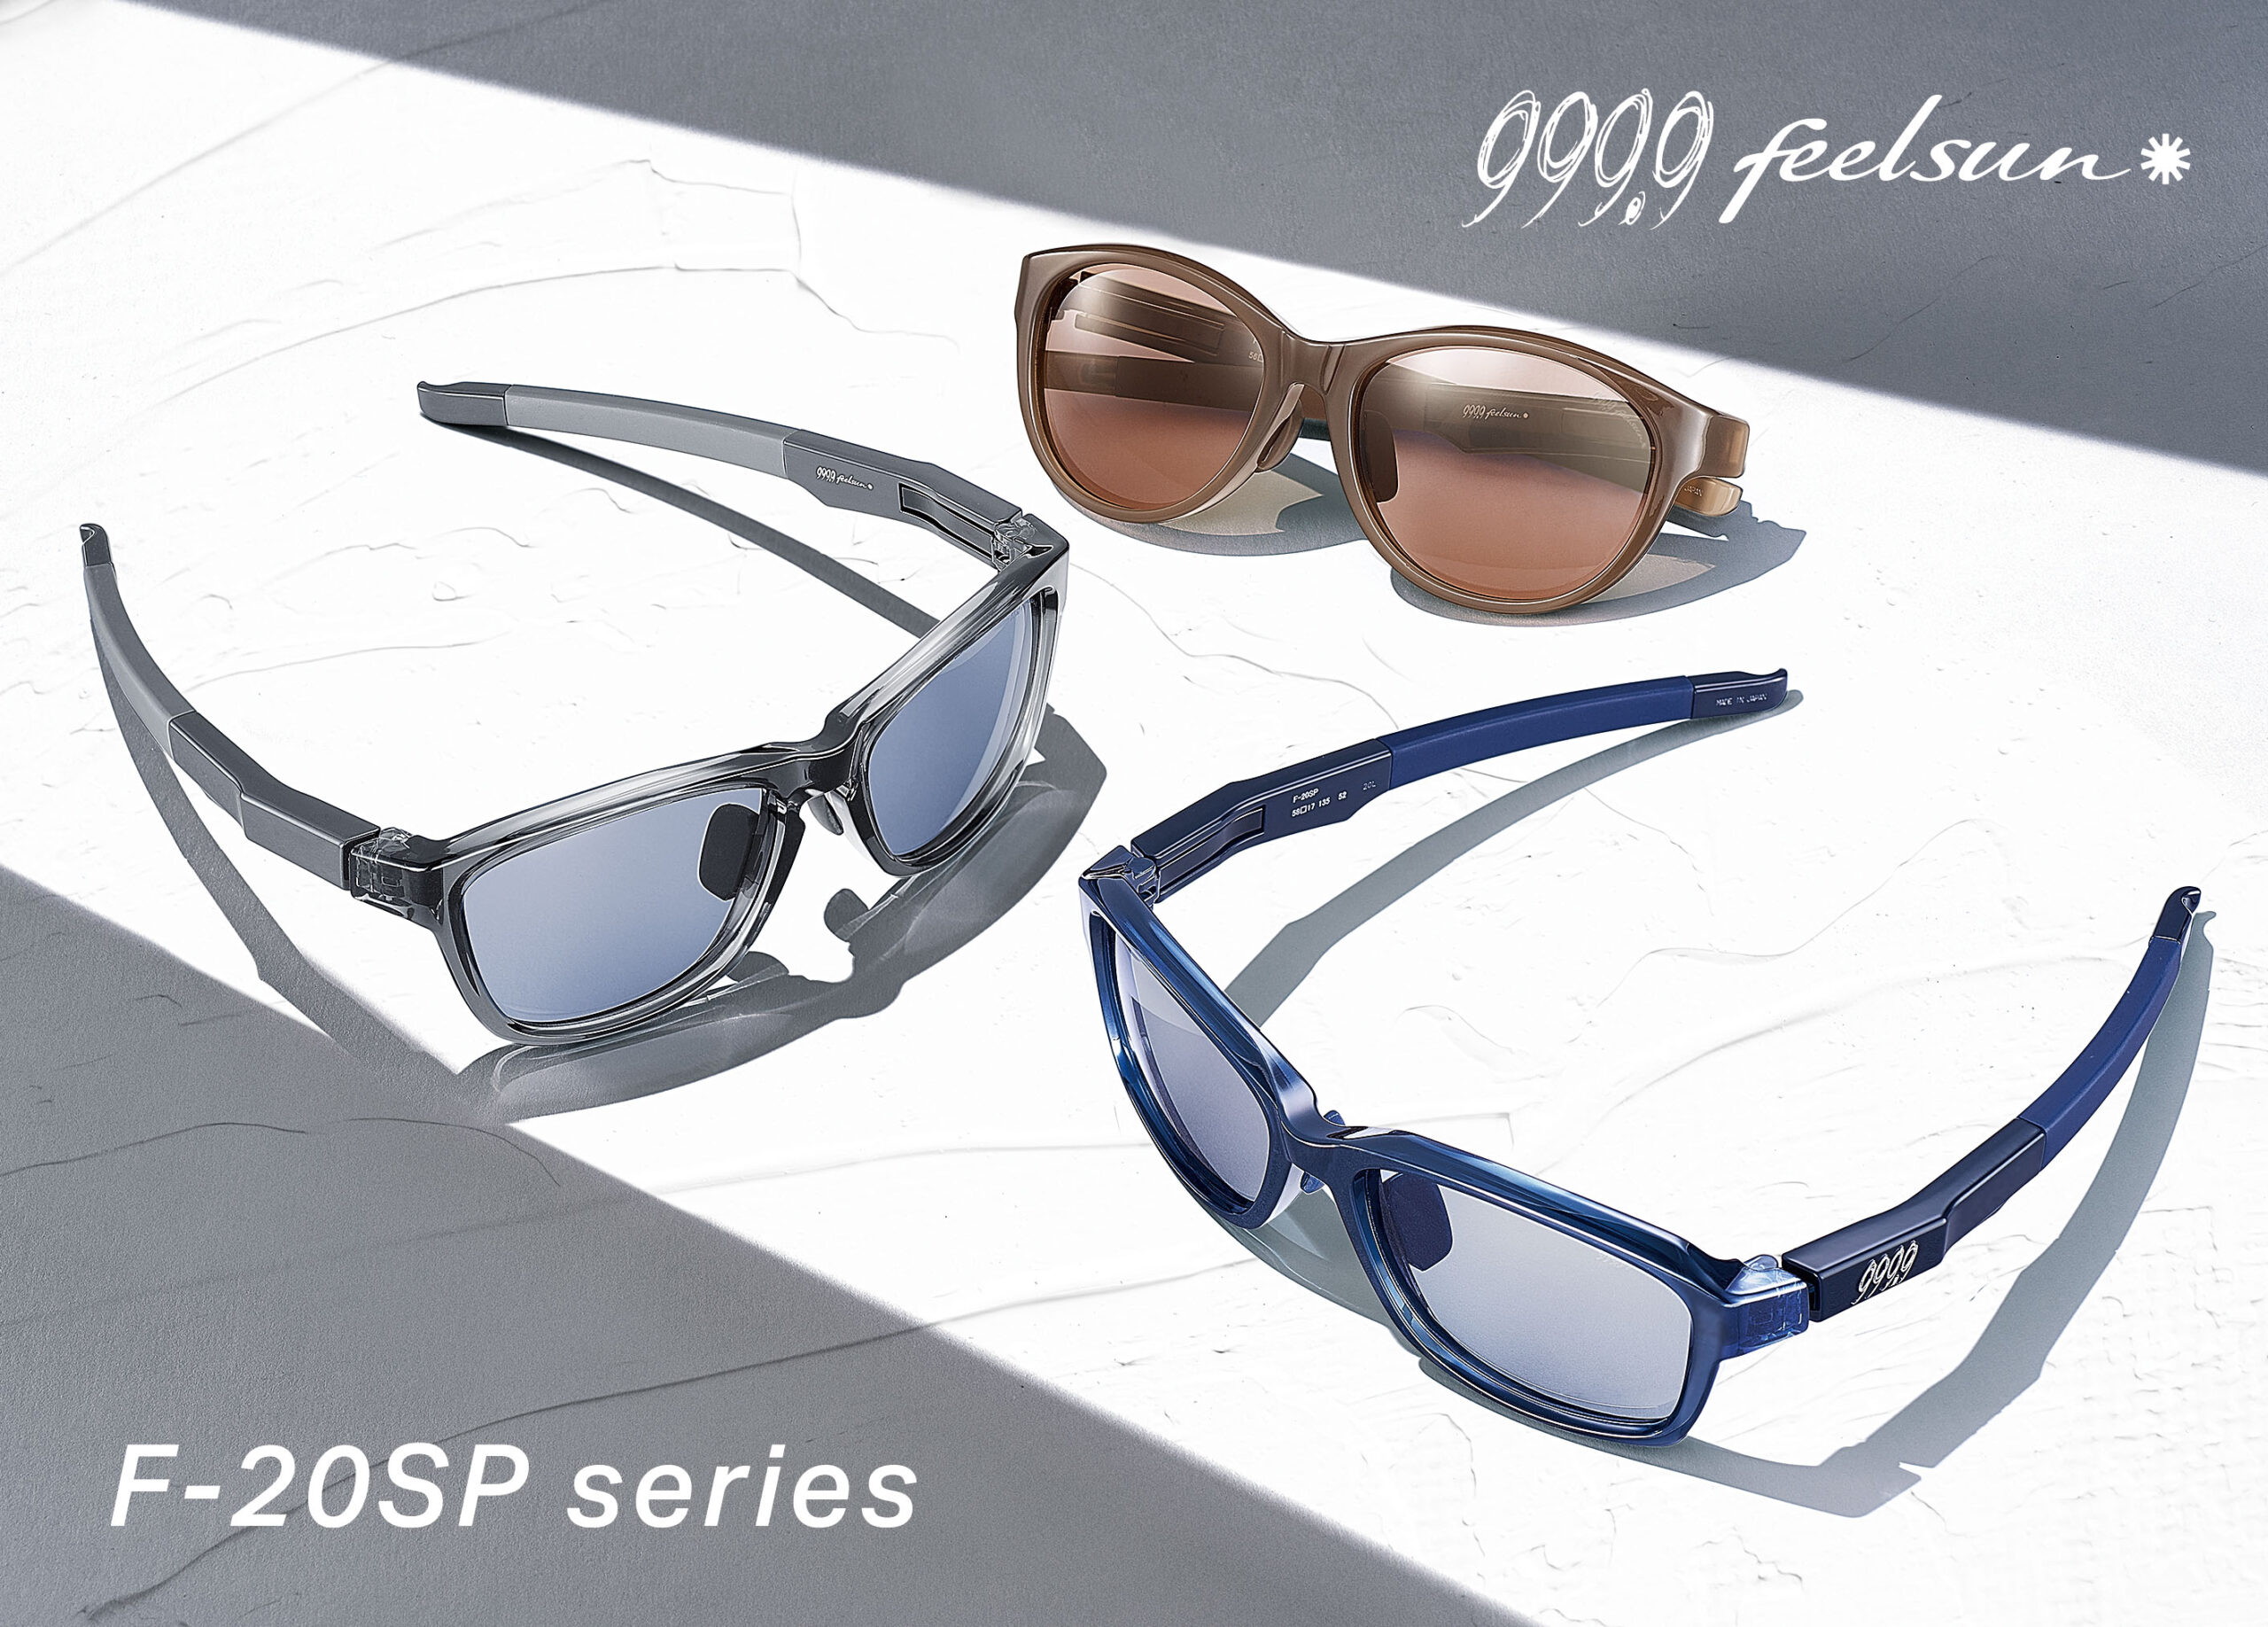 999.9 feelsunのSPシリーズが、新たなデザイン、新たなカラーリングで ...